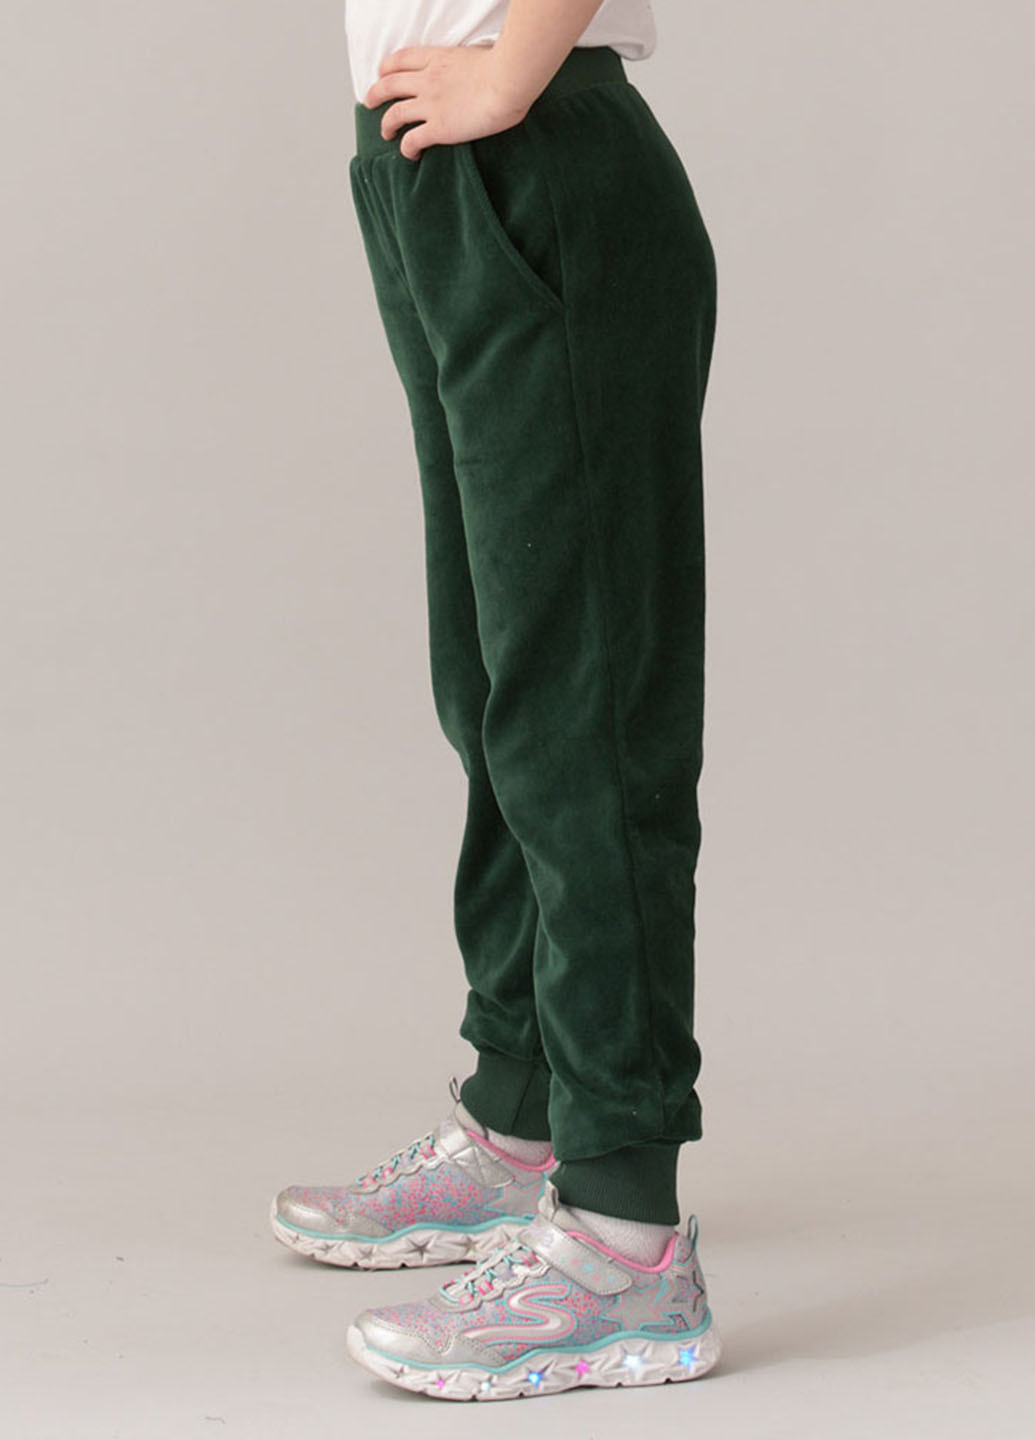 Темно-зеленые спортивные демисезонные джоггеры брюки Promin